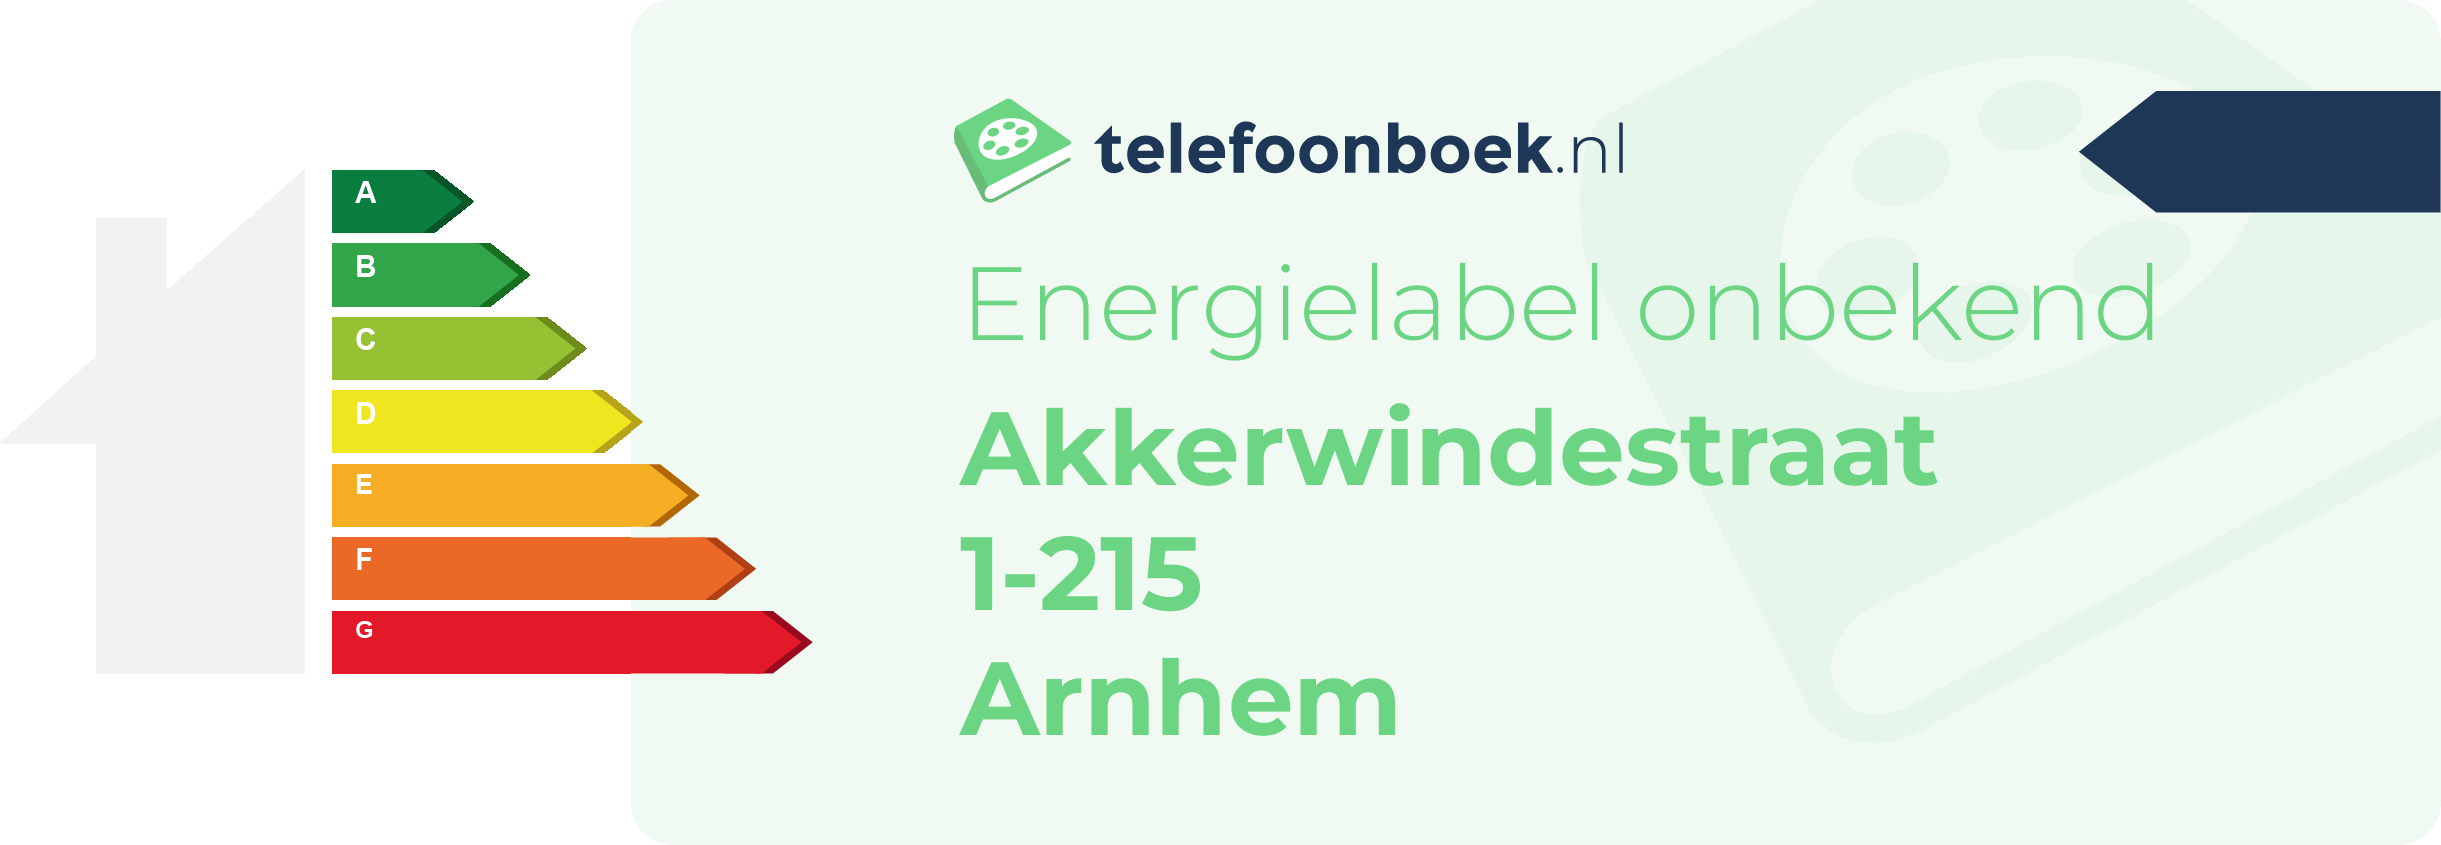 Energielabel Akkerwindestraat 1-215 Arnhem